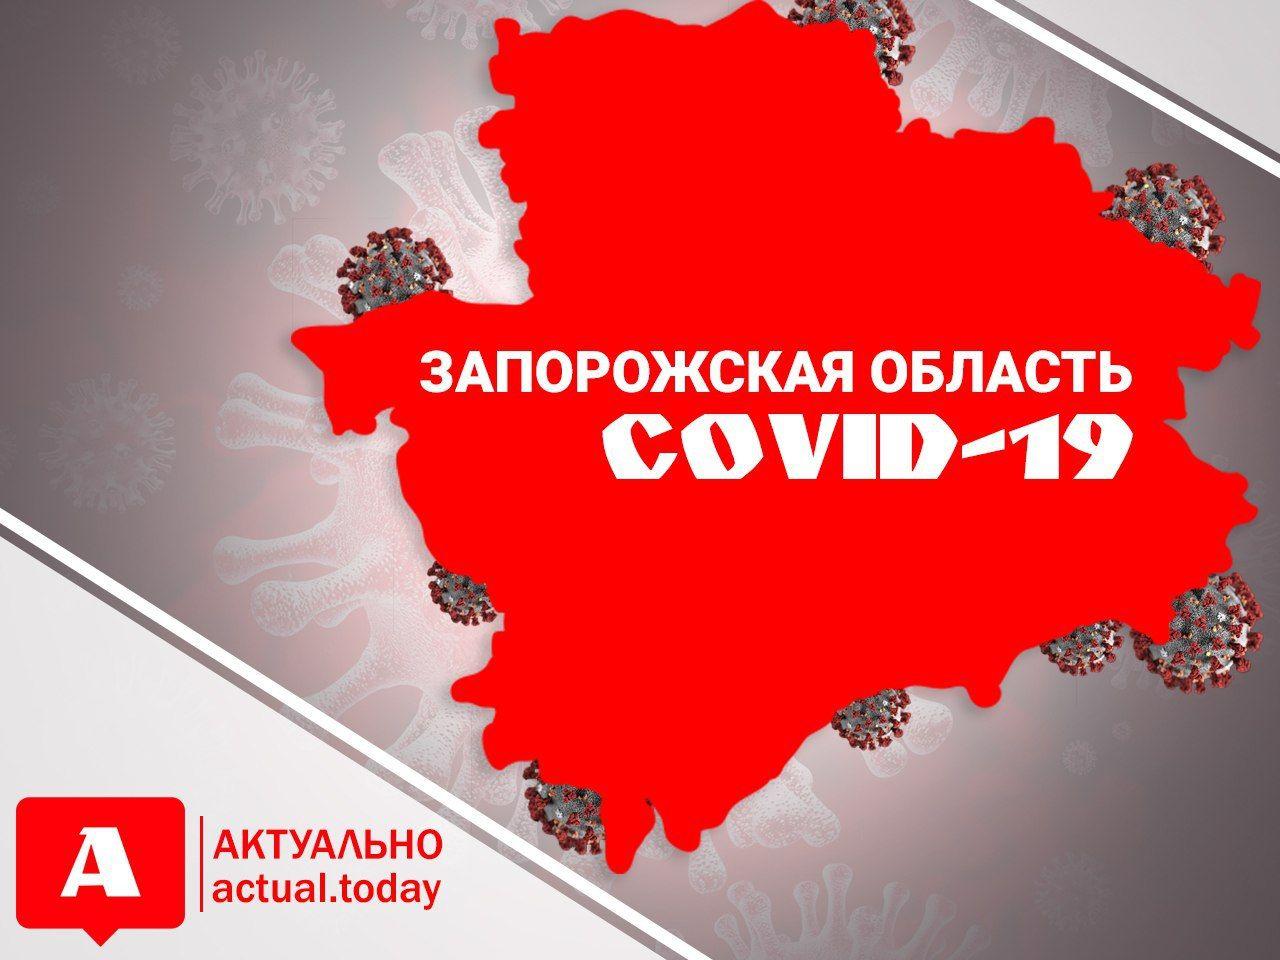 Запорожская область за последние сутки оказалась в лидерах по наибольшему количеству заболевших COVID-19